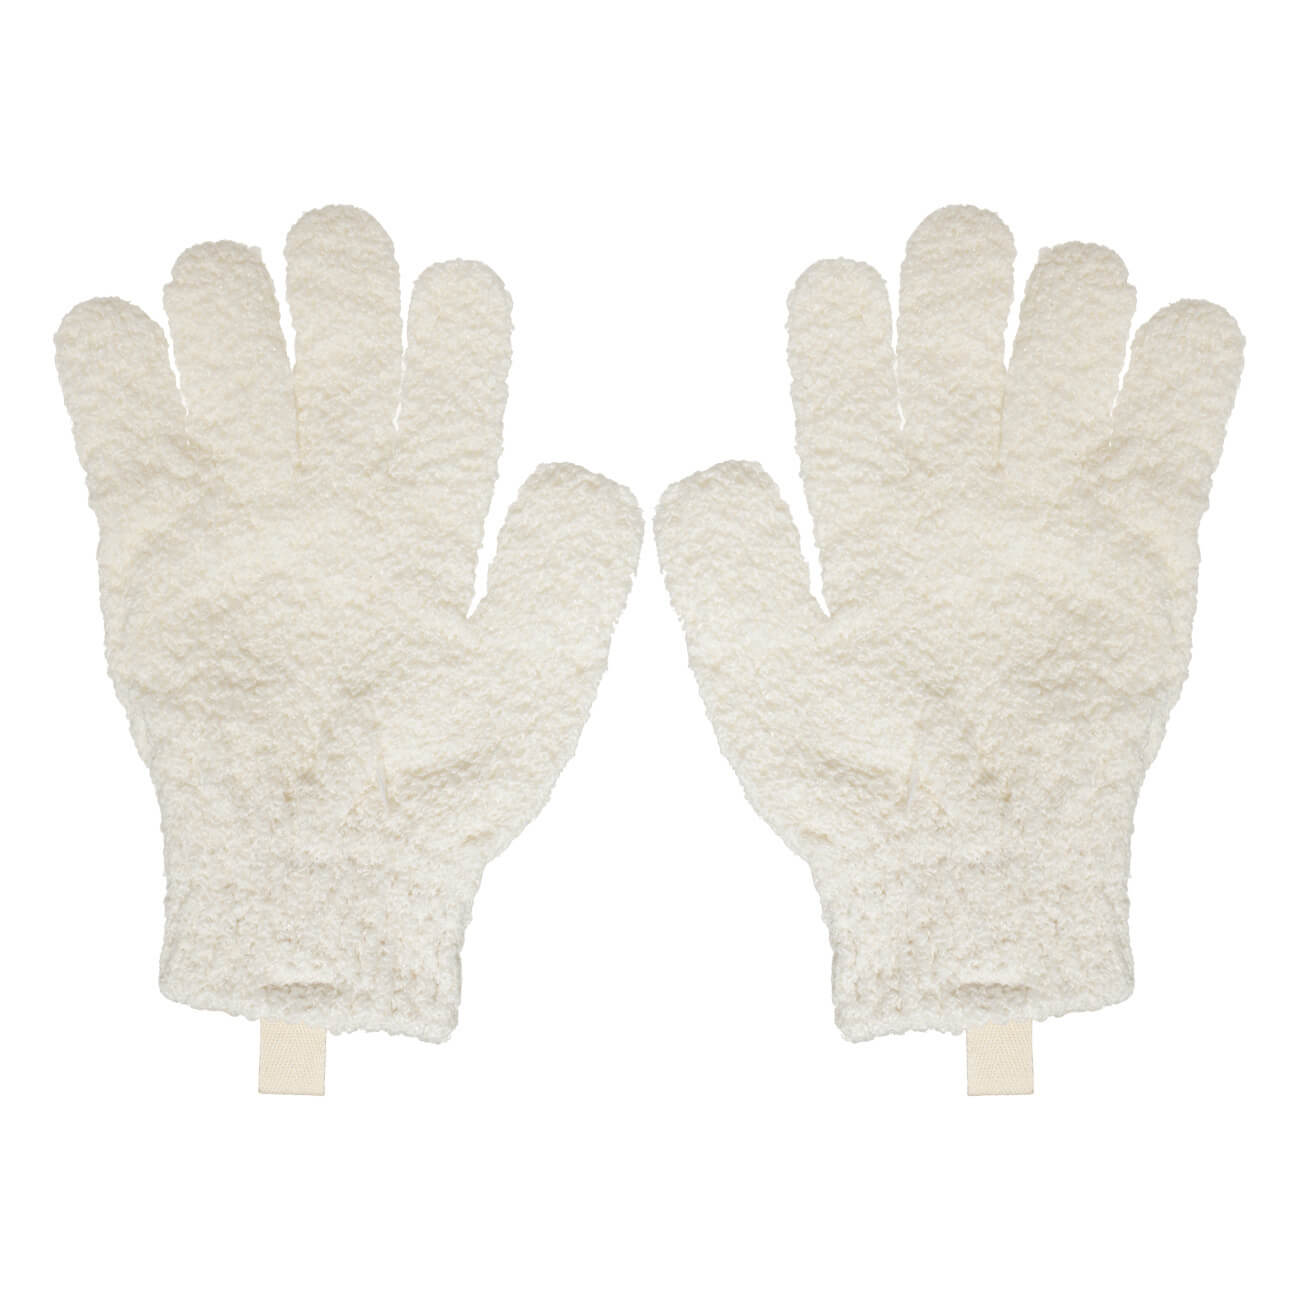 Перчатка для мытья тела, 21 см, 2 шт, отшелушивающая, полиэстер, молочная, Unique spa перчатка титана